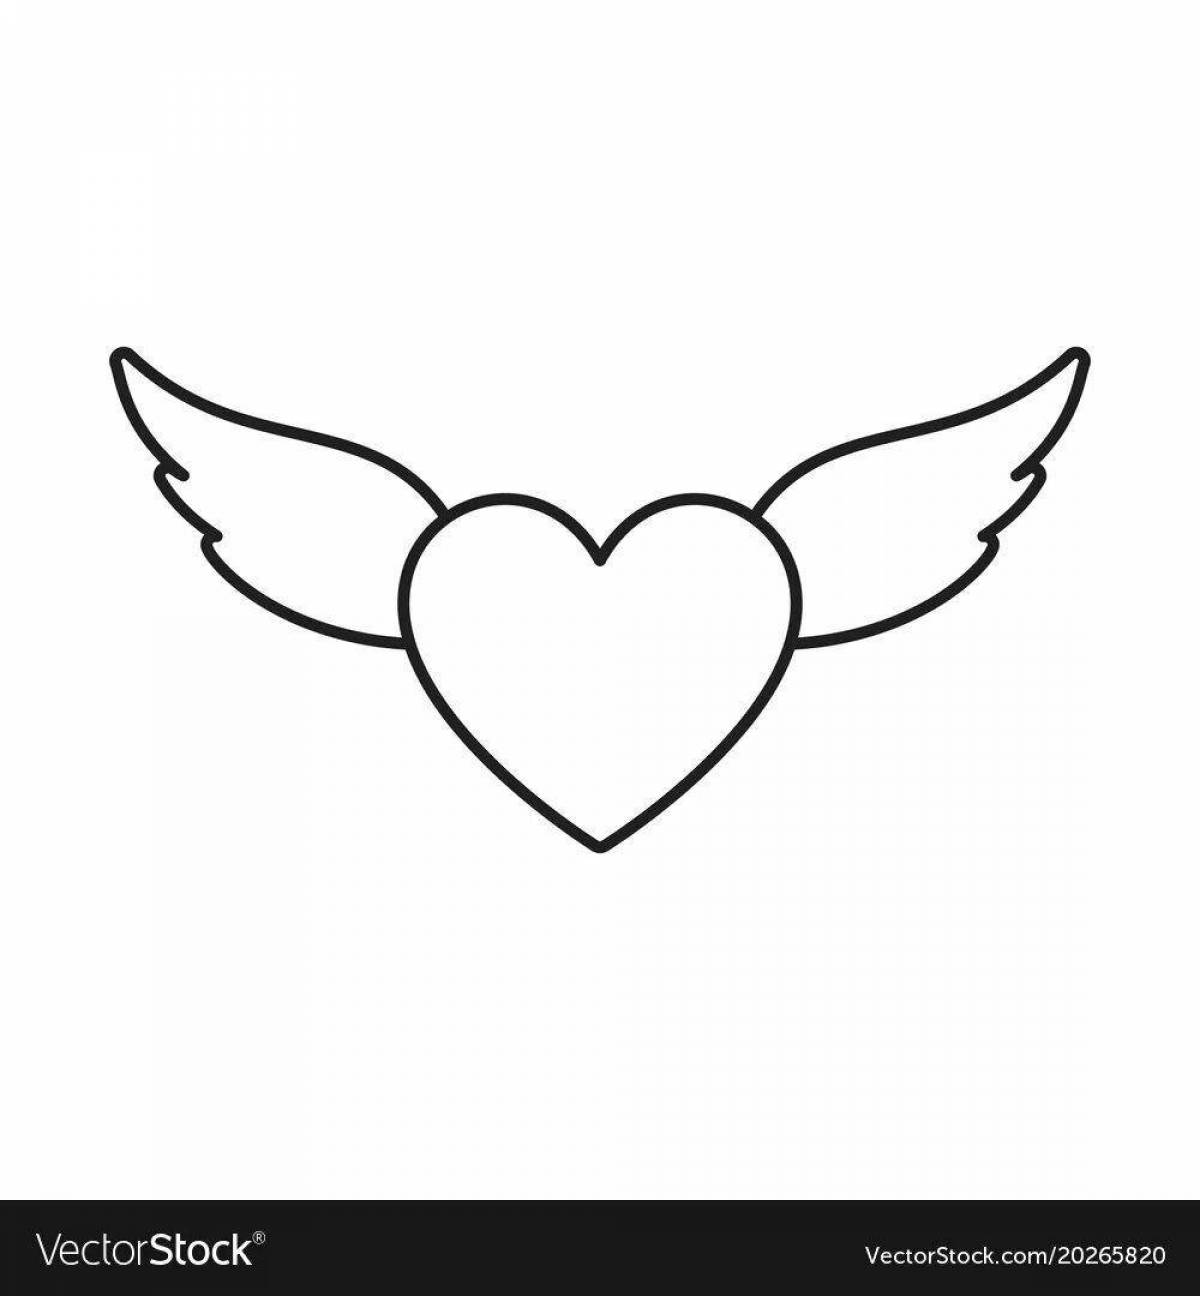 Загадочная раскраска сердце с крыльями